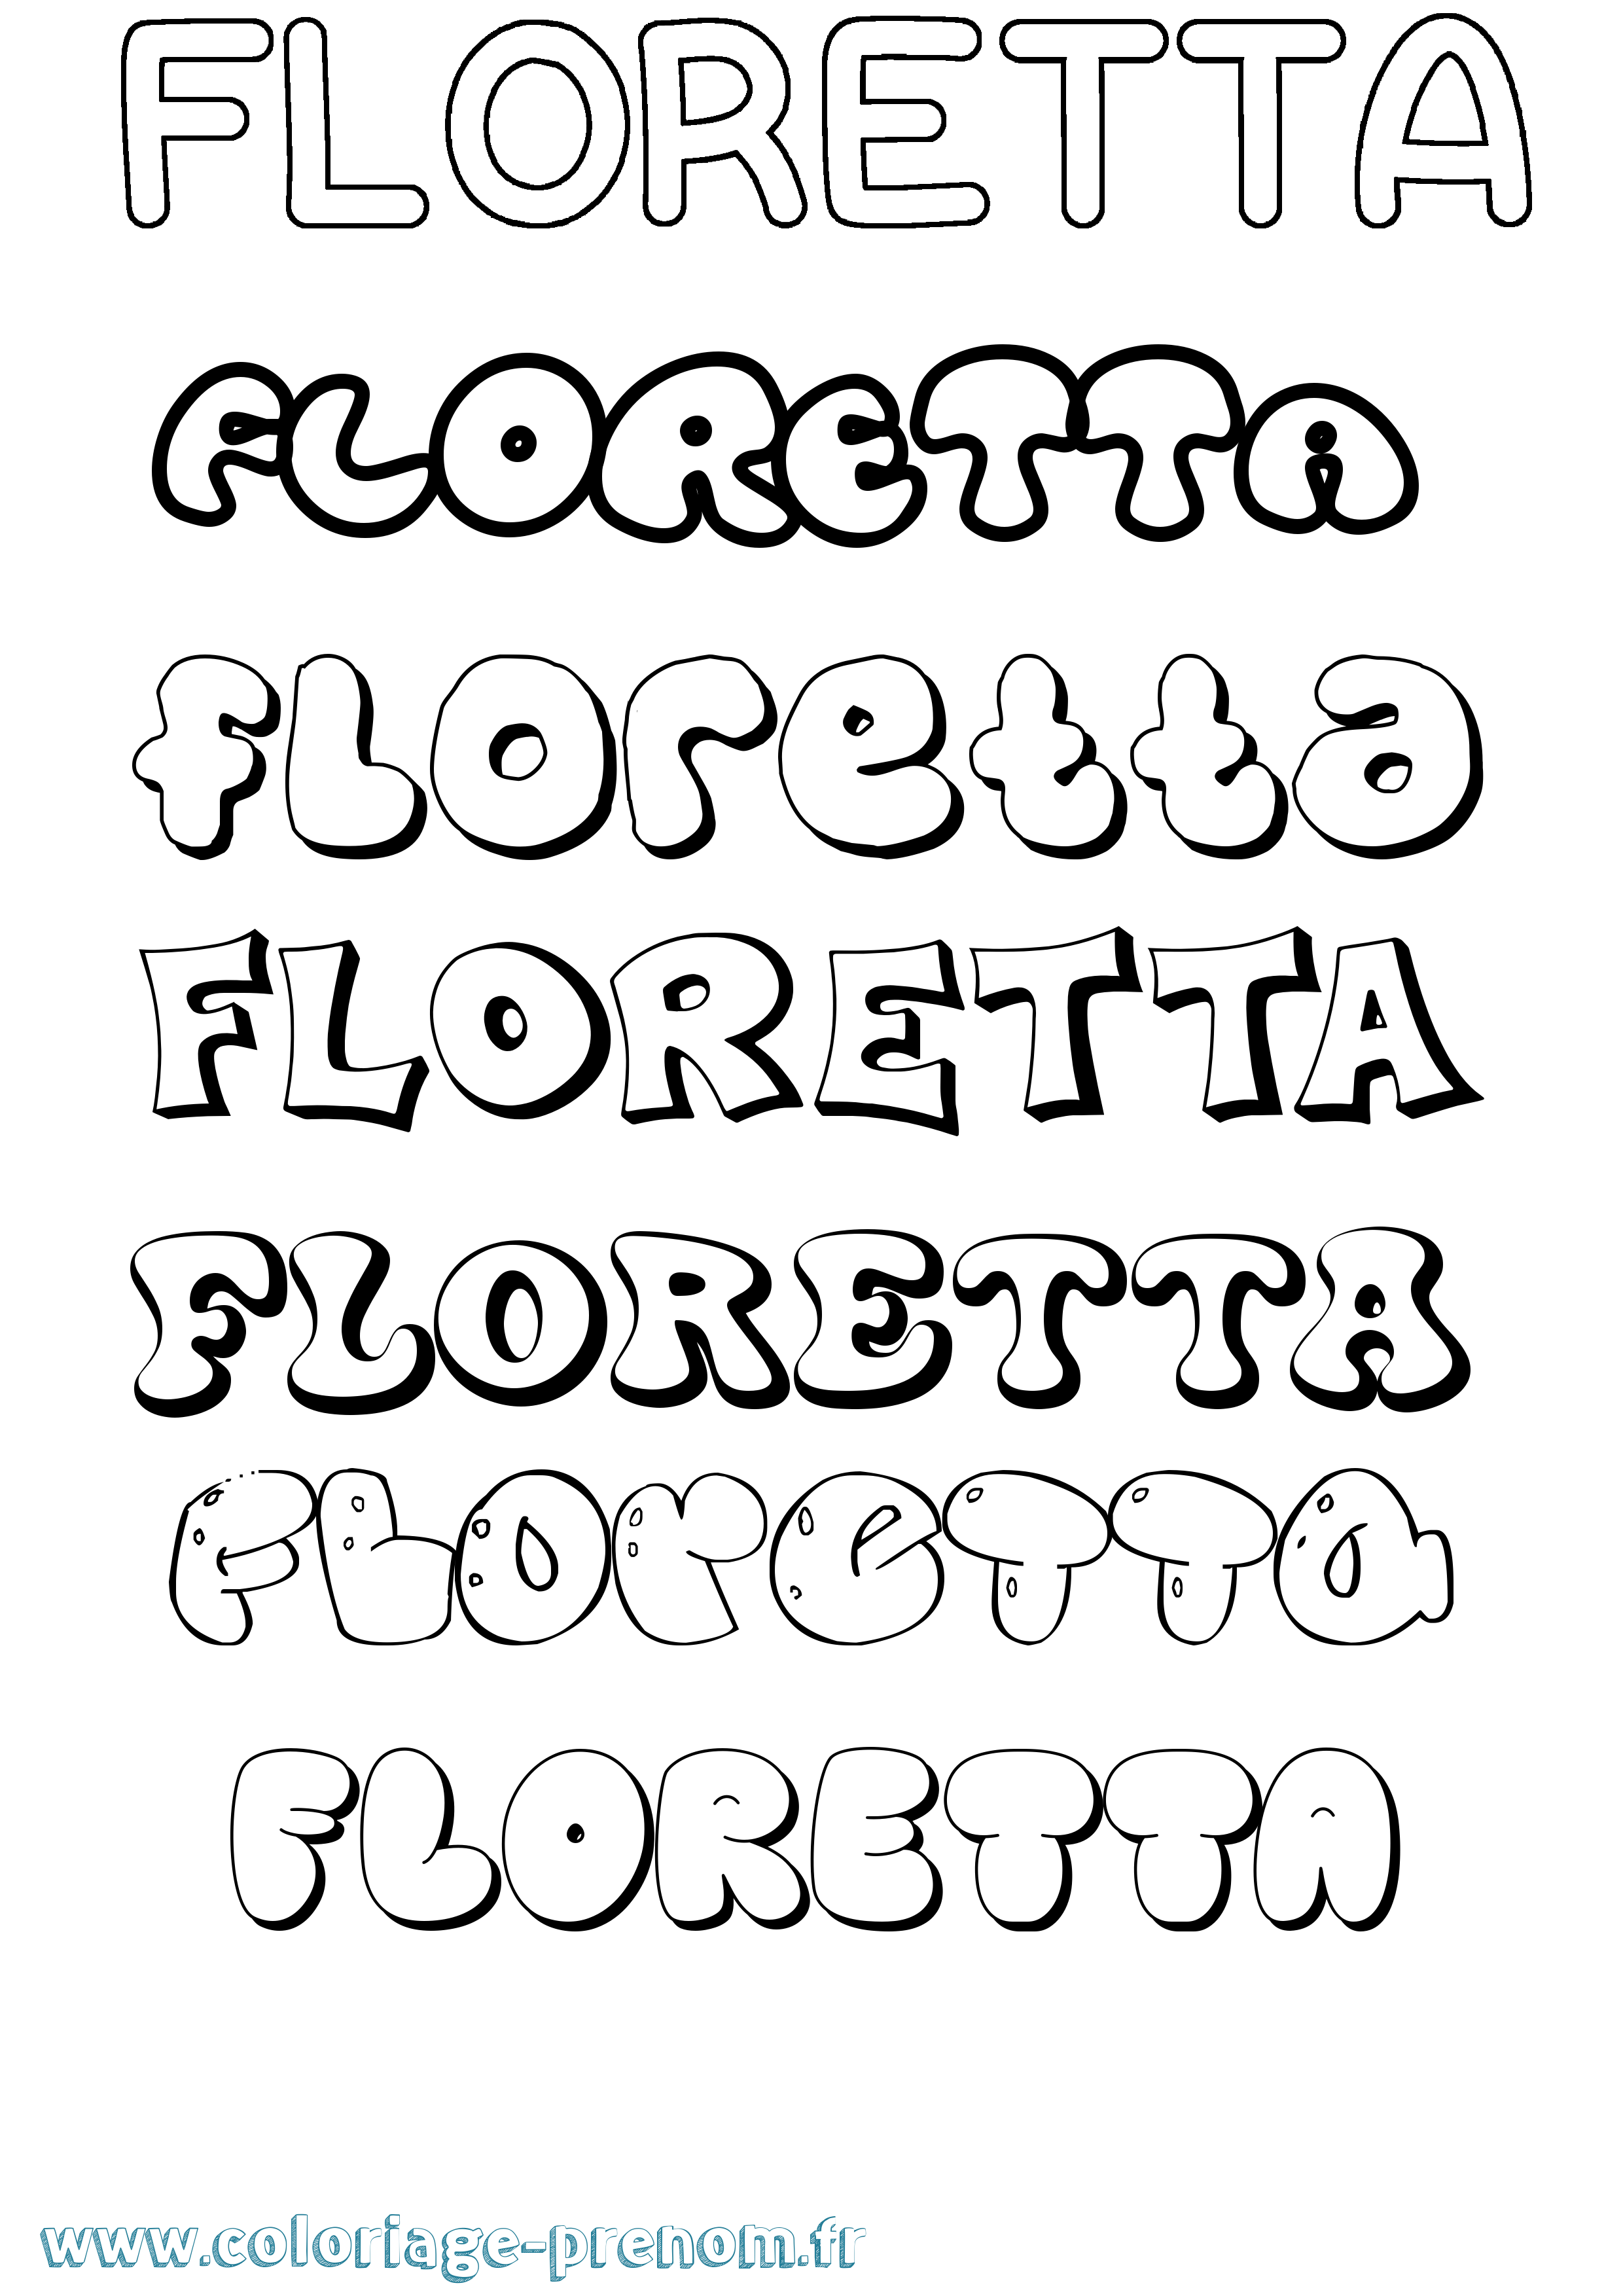 Coloriage prénom Floretta Bubble